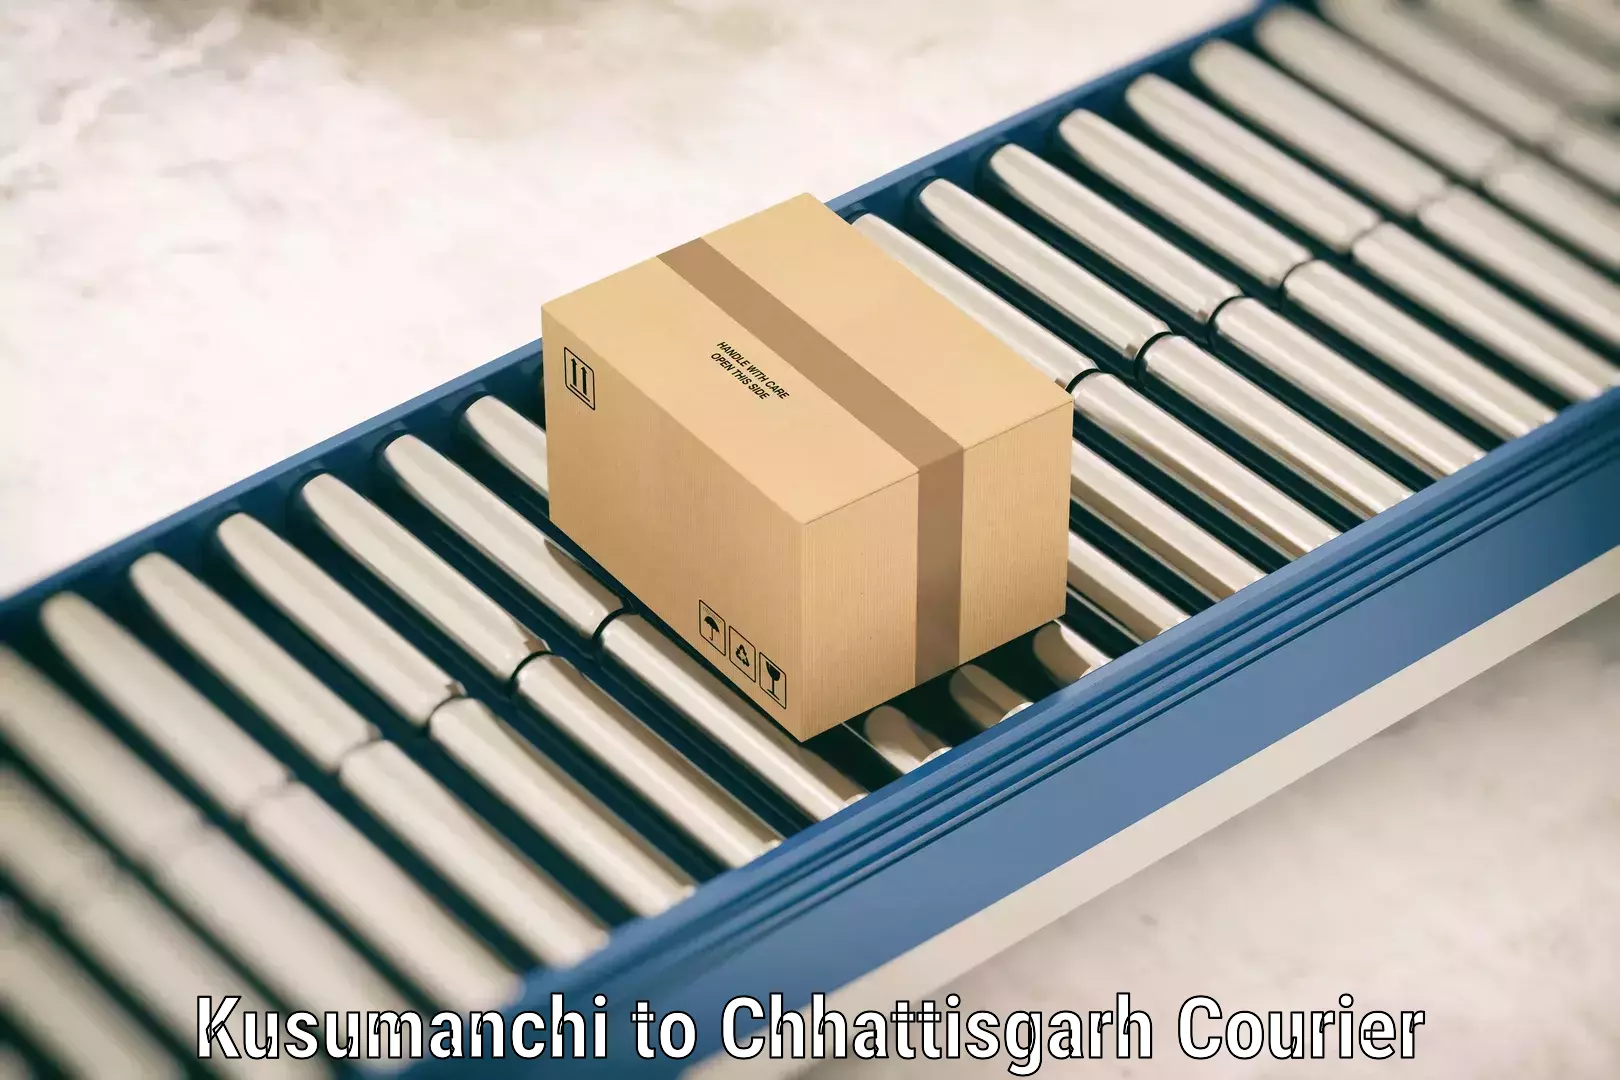 Luggage transport company Kusumanchi to Nagri